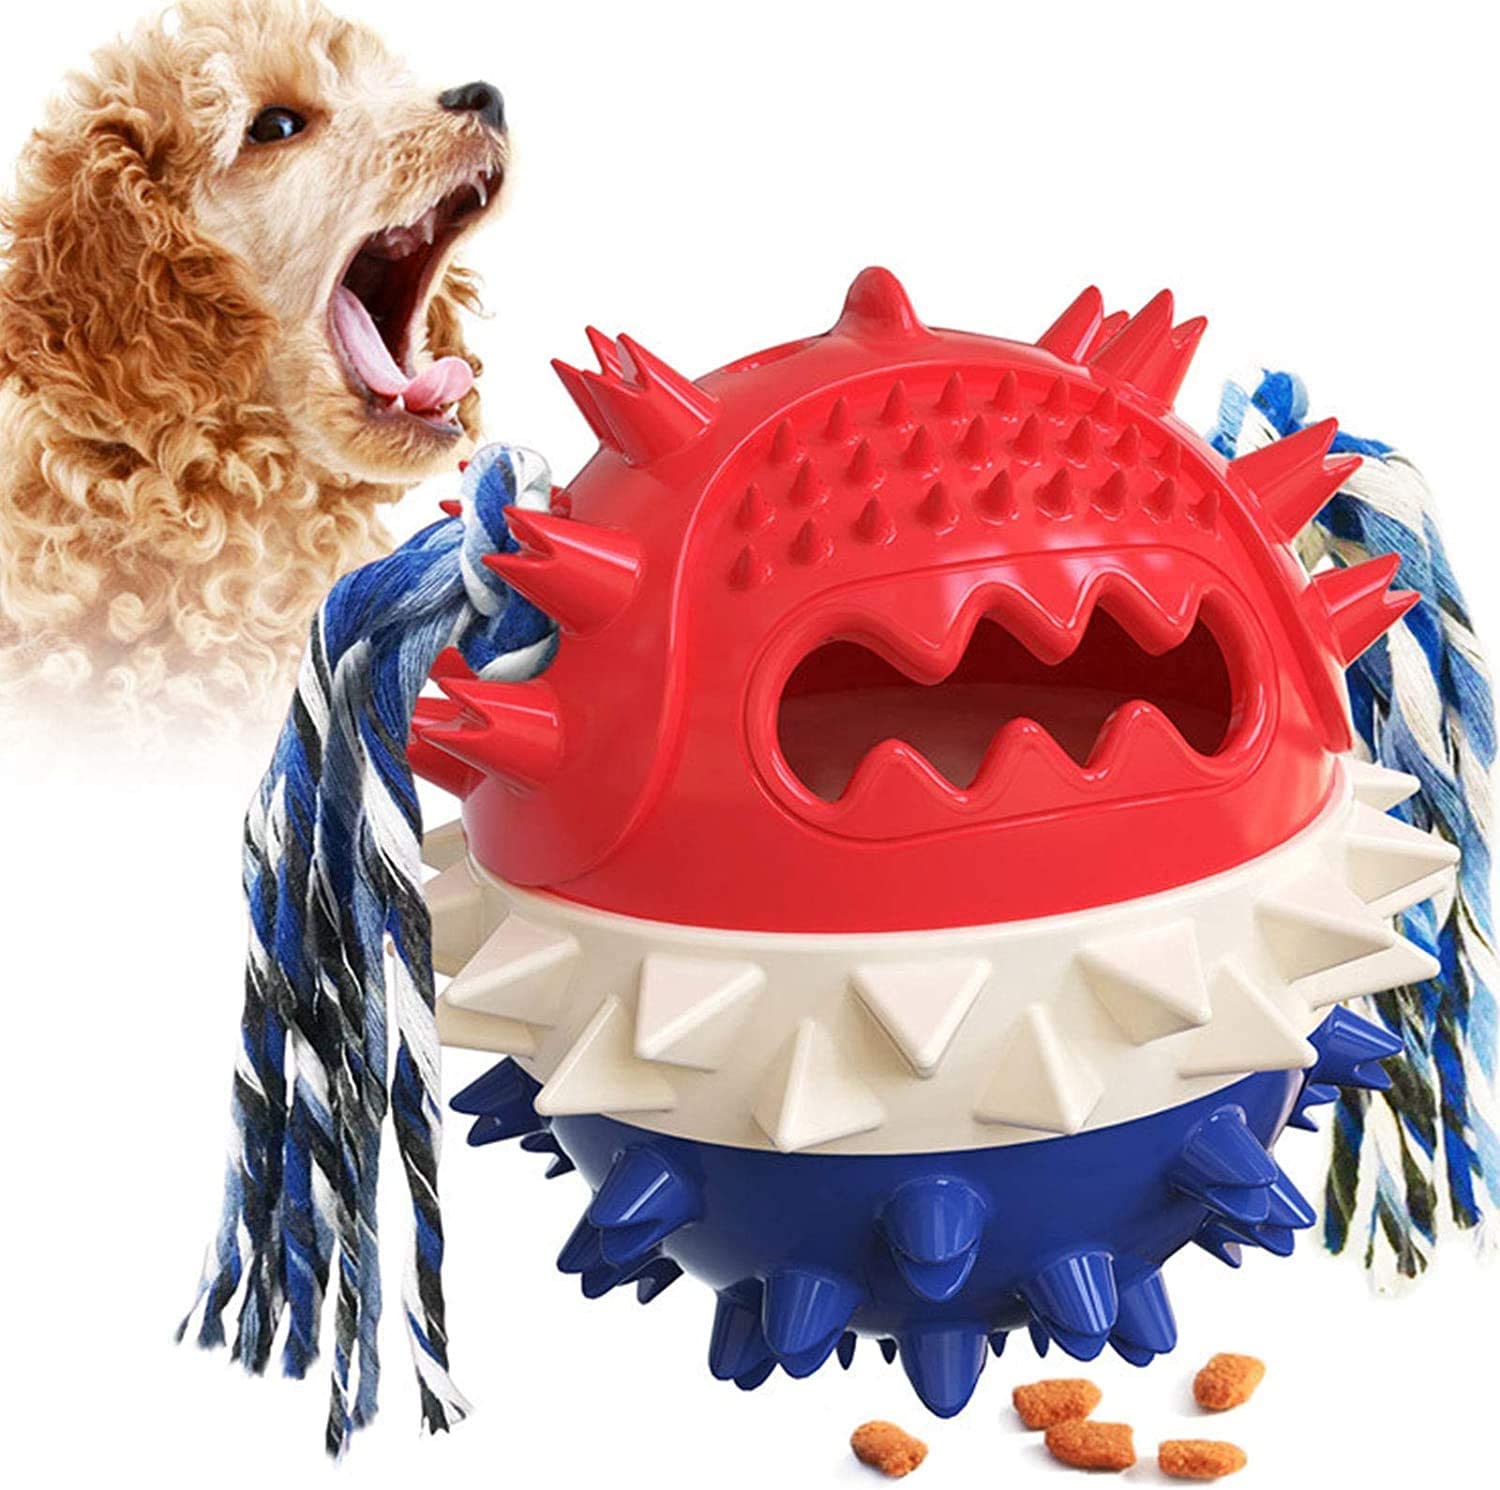 犬 おもちゃ 犬 ボール 噛むおもちゃ 犬用 玩具ボール ラバー製 知育玩具 餌入れ おやつボール 運動不足やストレス解消 ダ イエット レーニングなど 犬遊び用 歯清潔 安全 丈夫 耐久性